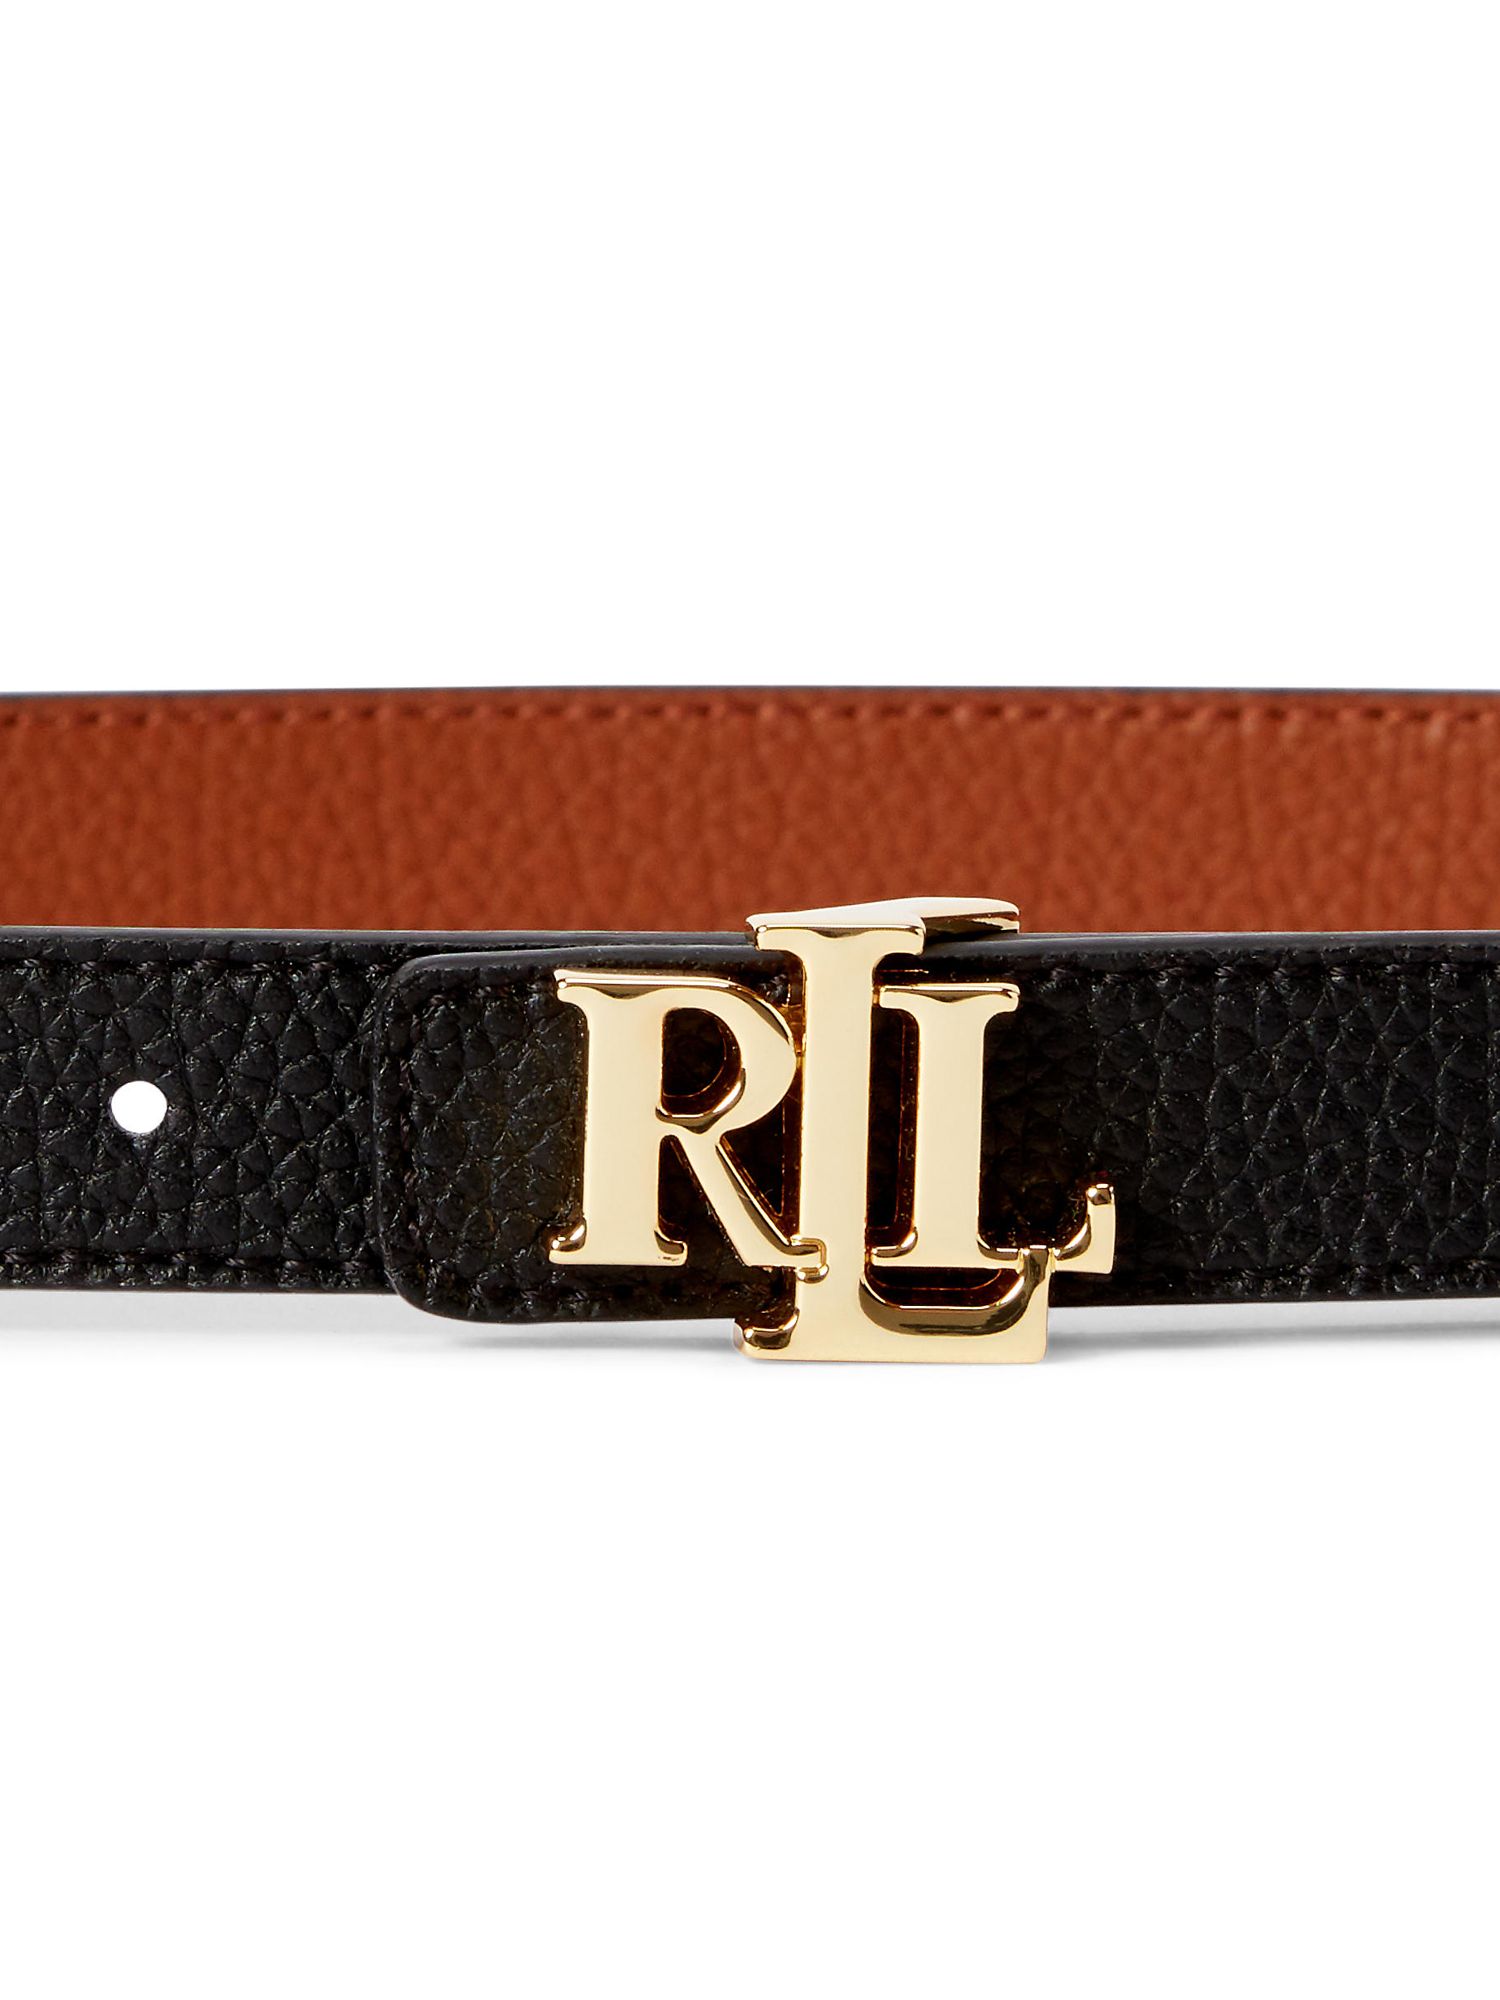 Buy Lauren Ralph Lauren 20 Reversible Leather Belt Online at johnlewis.com